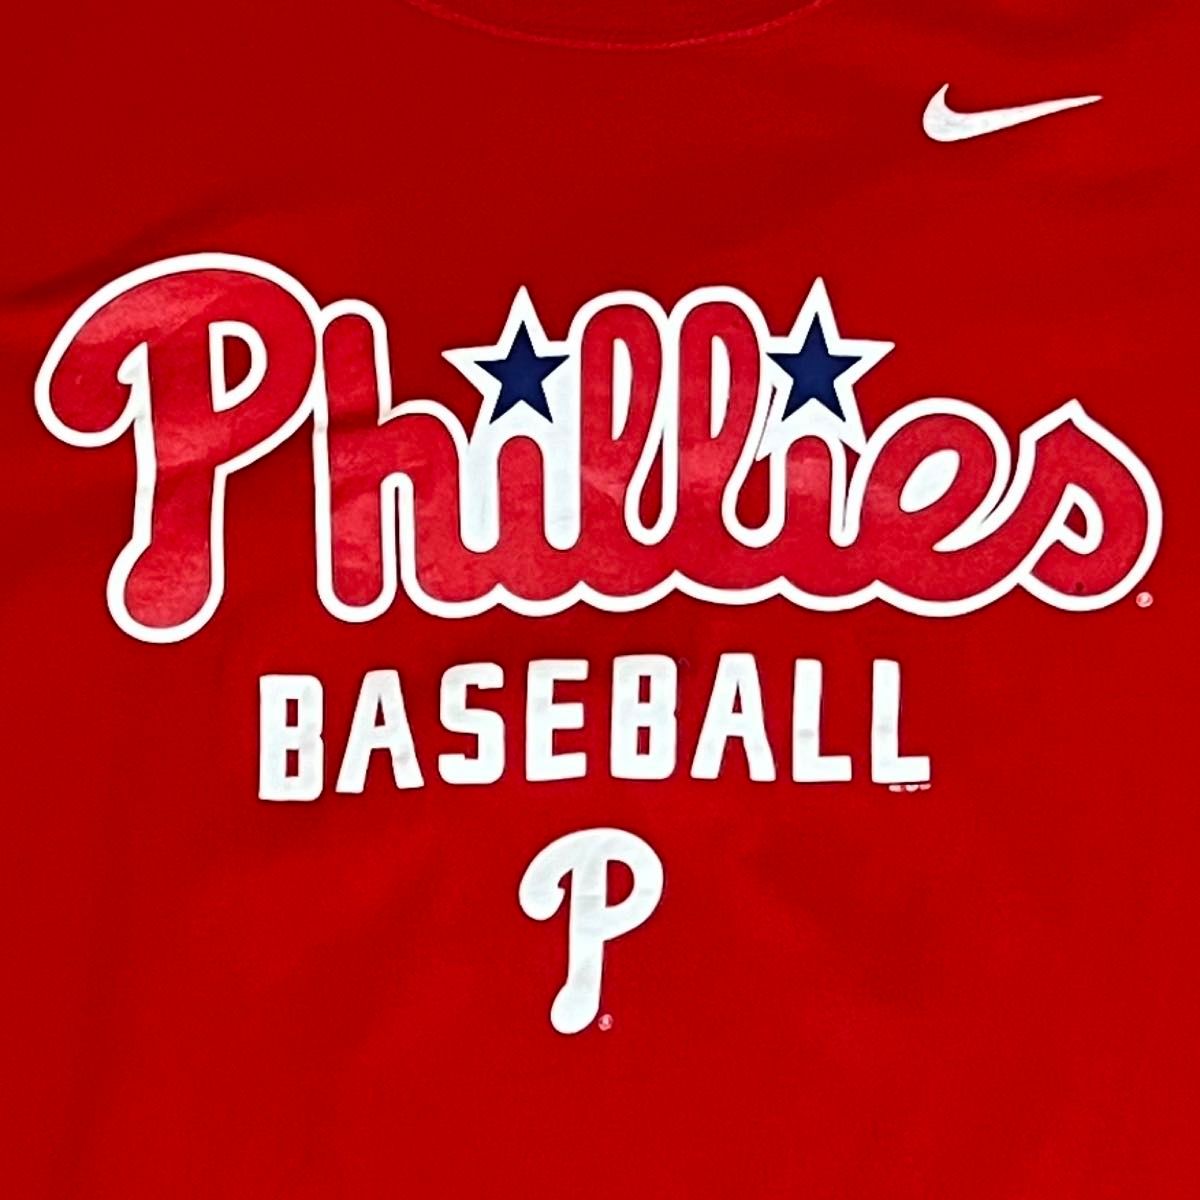 NIKE × Philadelphia Philliesナイキ × フィラデルフィア フィリーズTシャツ